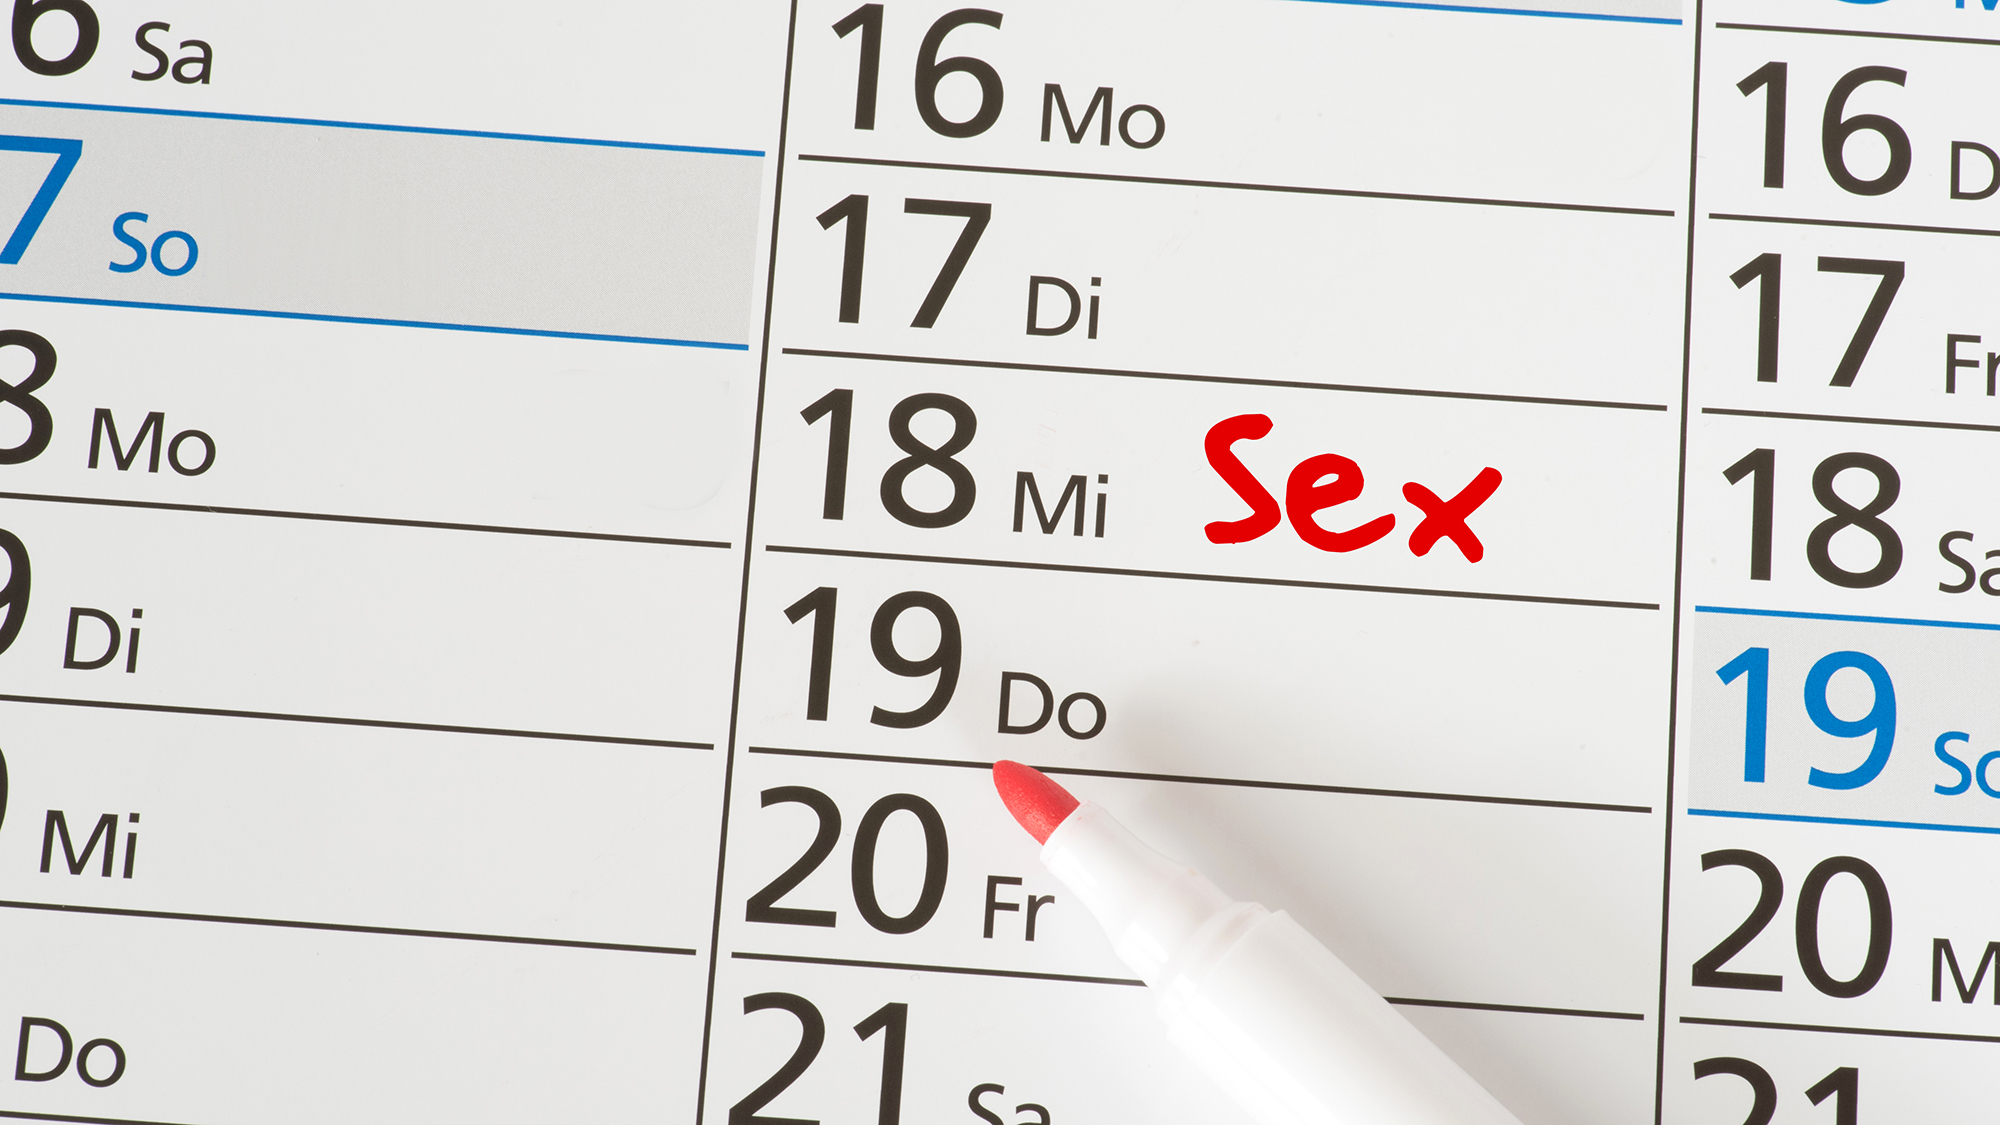 "Sex!" eingetragen in einem Kalender.